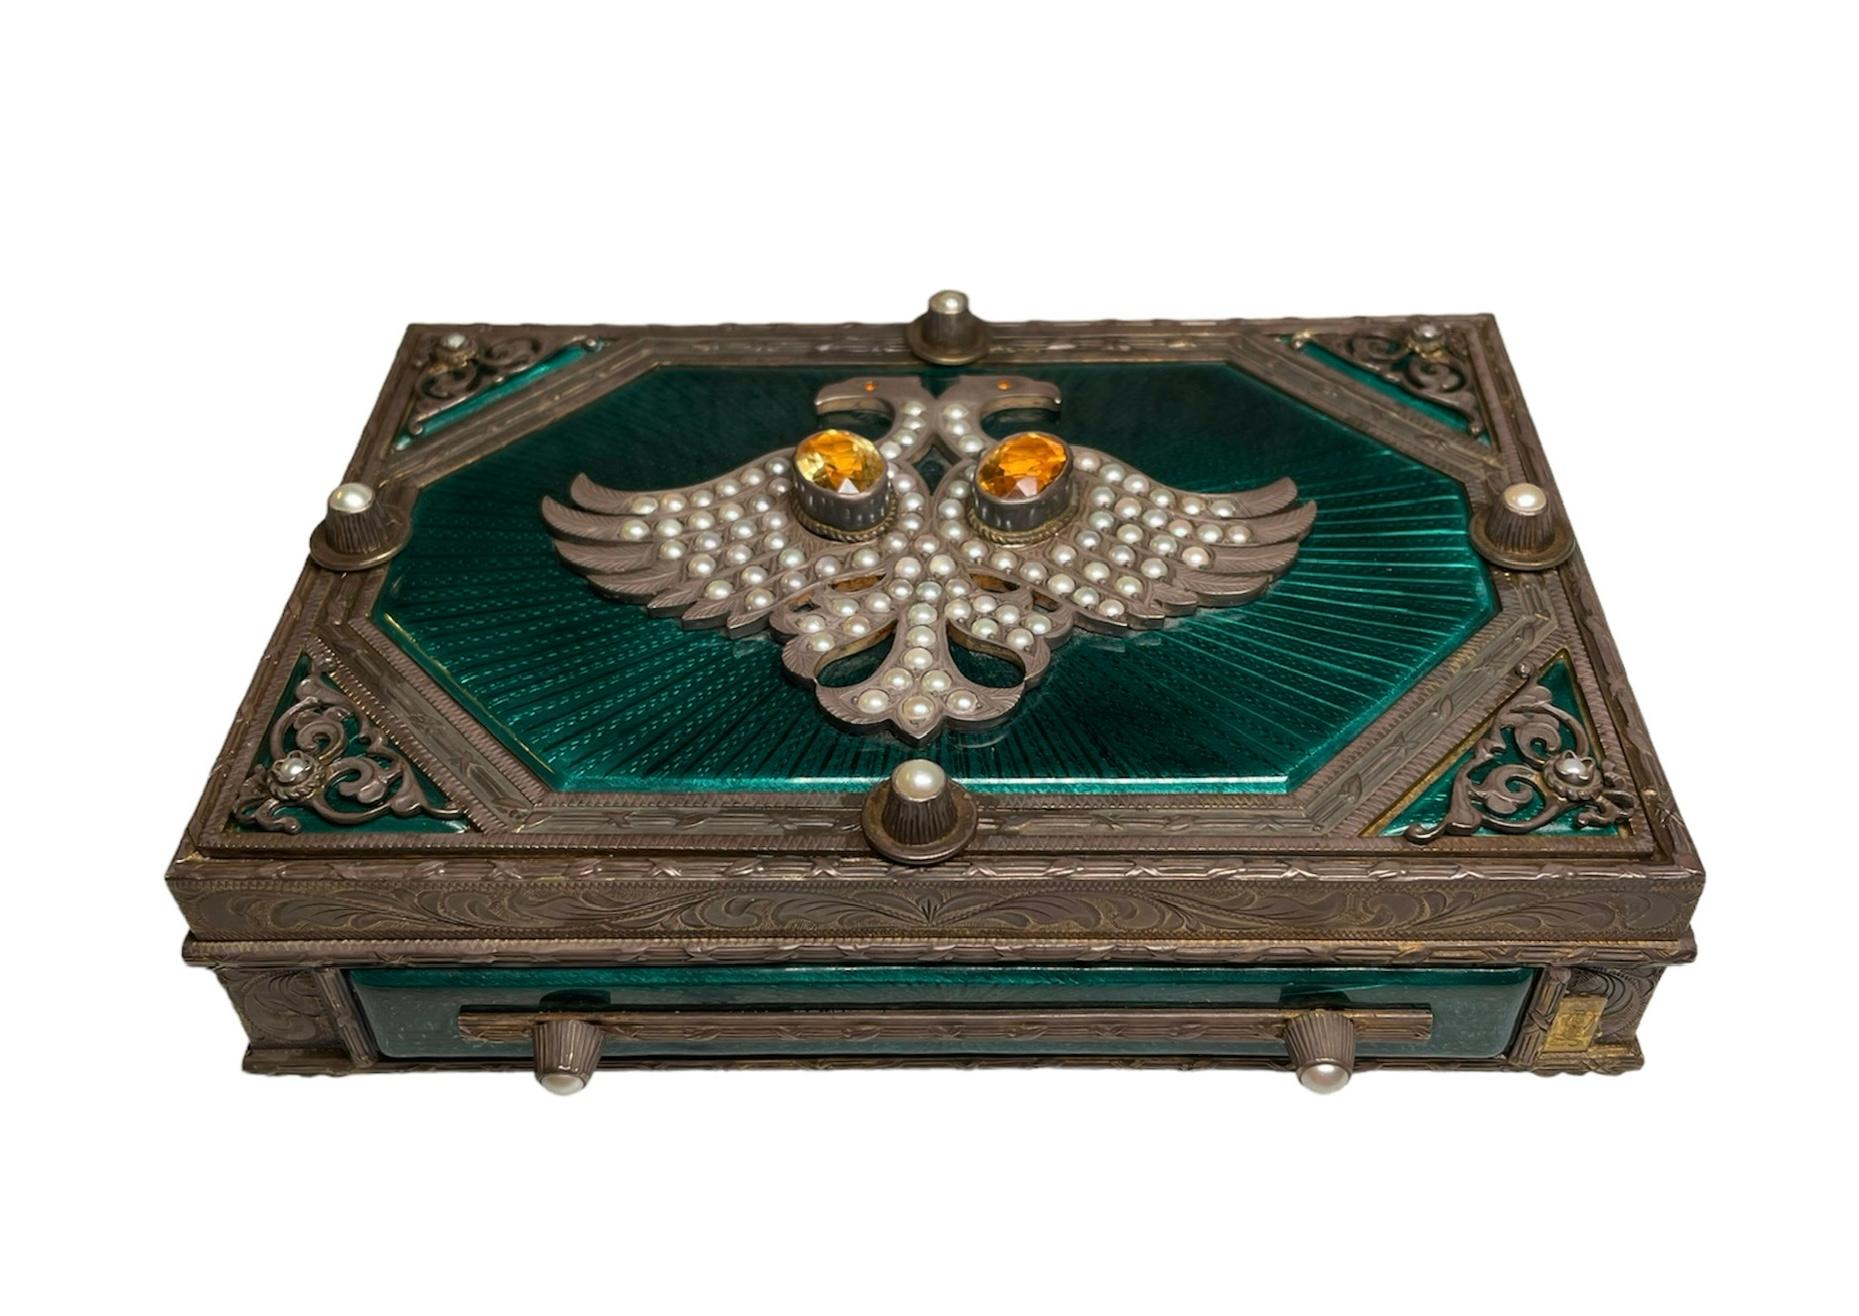 Dies ist Faberge Stil rechteckig patiniert 925 Silber Metall dekorative Box / Zigarettenetui. Es zeigt eine schwere, sehr gut verzierte Scharnierbox. Die Oberseite des Deckels ist in der Mitte mit einer achteckigen, smaragdgrünen, durchscheinenden